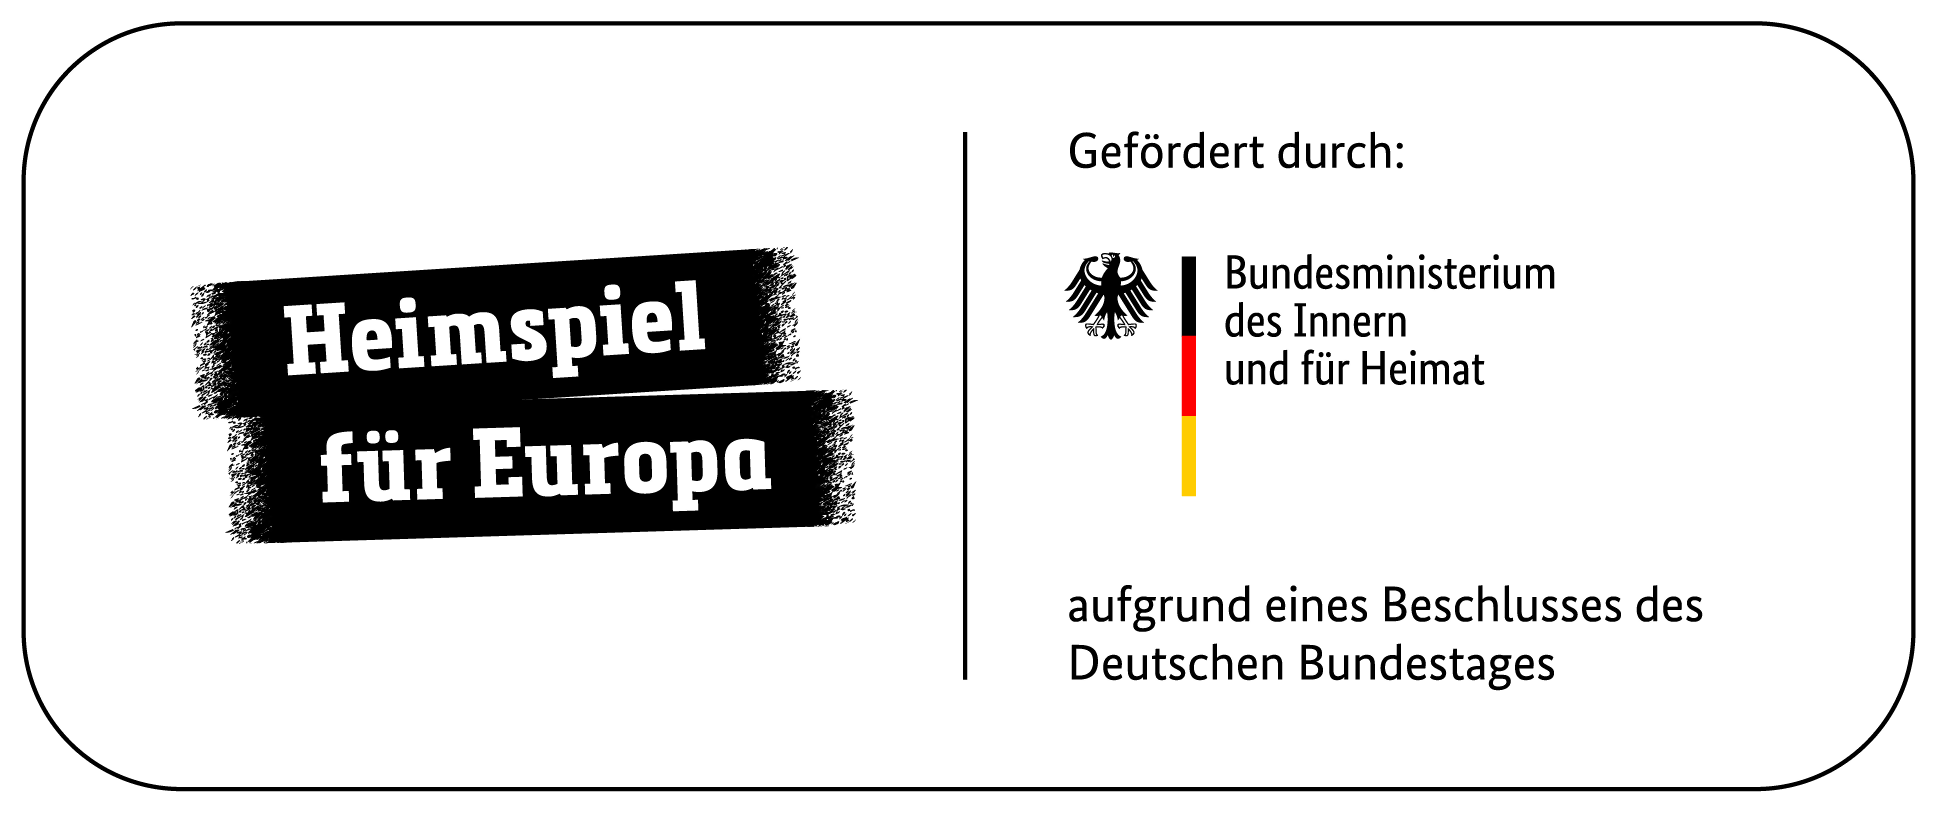 Grafik mit dem Text: "Heimspiel für Europa". Daneben: Gefördert durch "Logo des Bundesministerium des Innern und für Heimat" aufgrund eines Beschlusses des Deutschen Bundestags